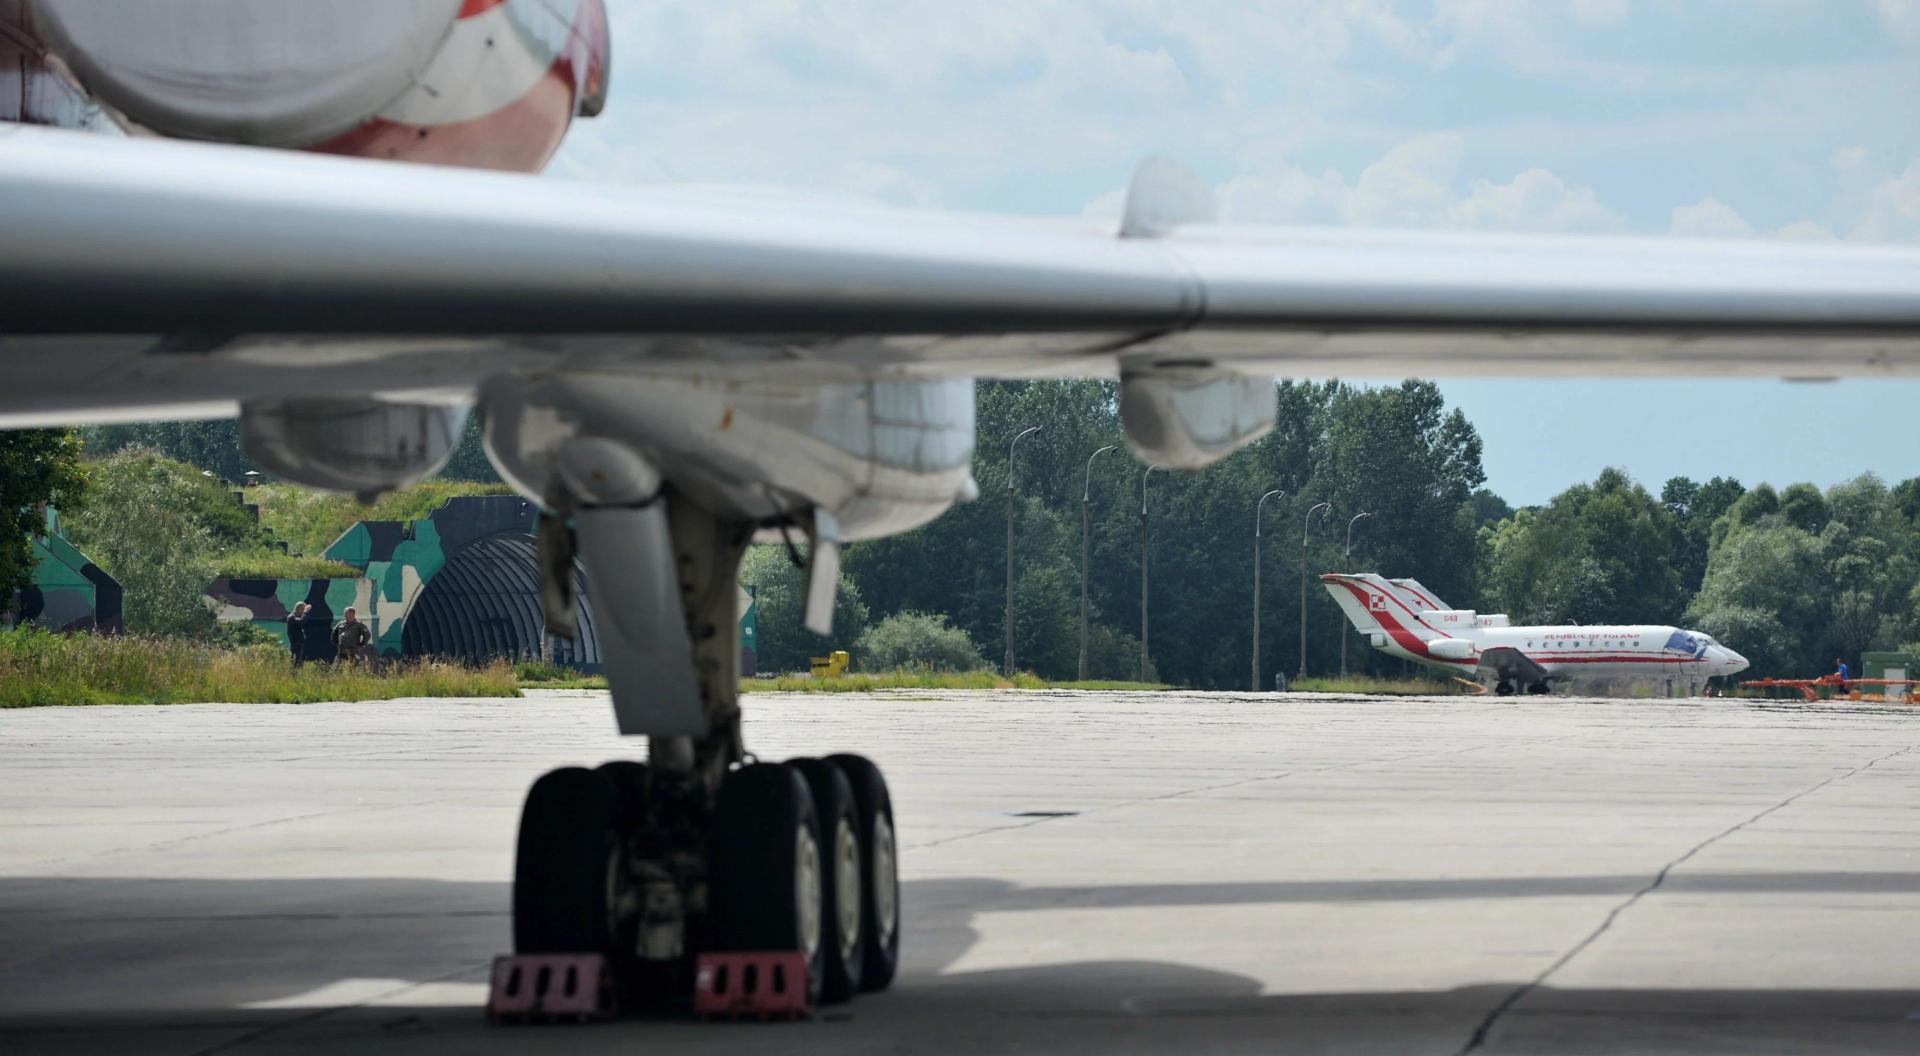 Ktoś przed wylotem manipulował przy skrzydle TU-154M? Nagrania z lotniska